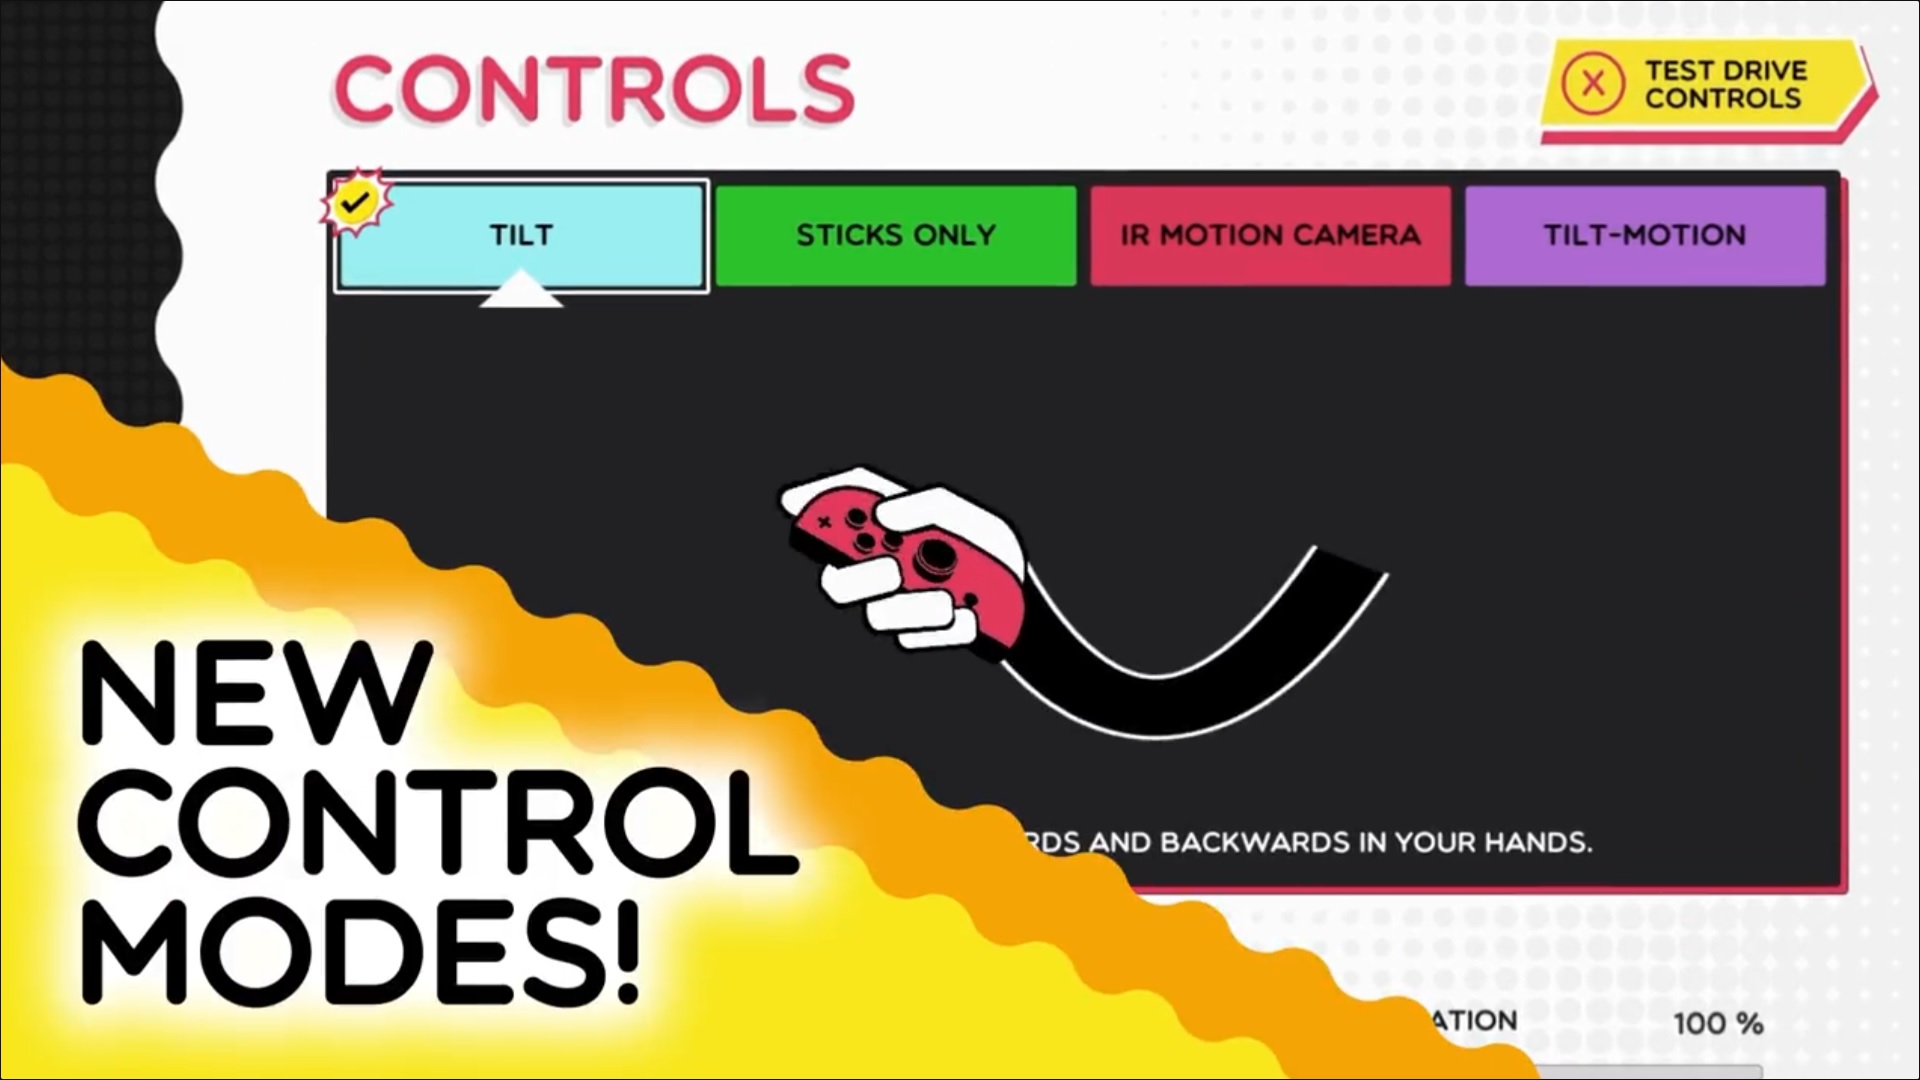 Let’s Talk Controls!